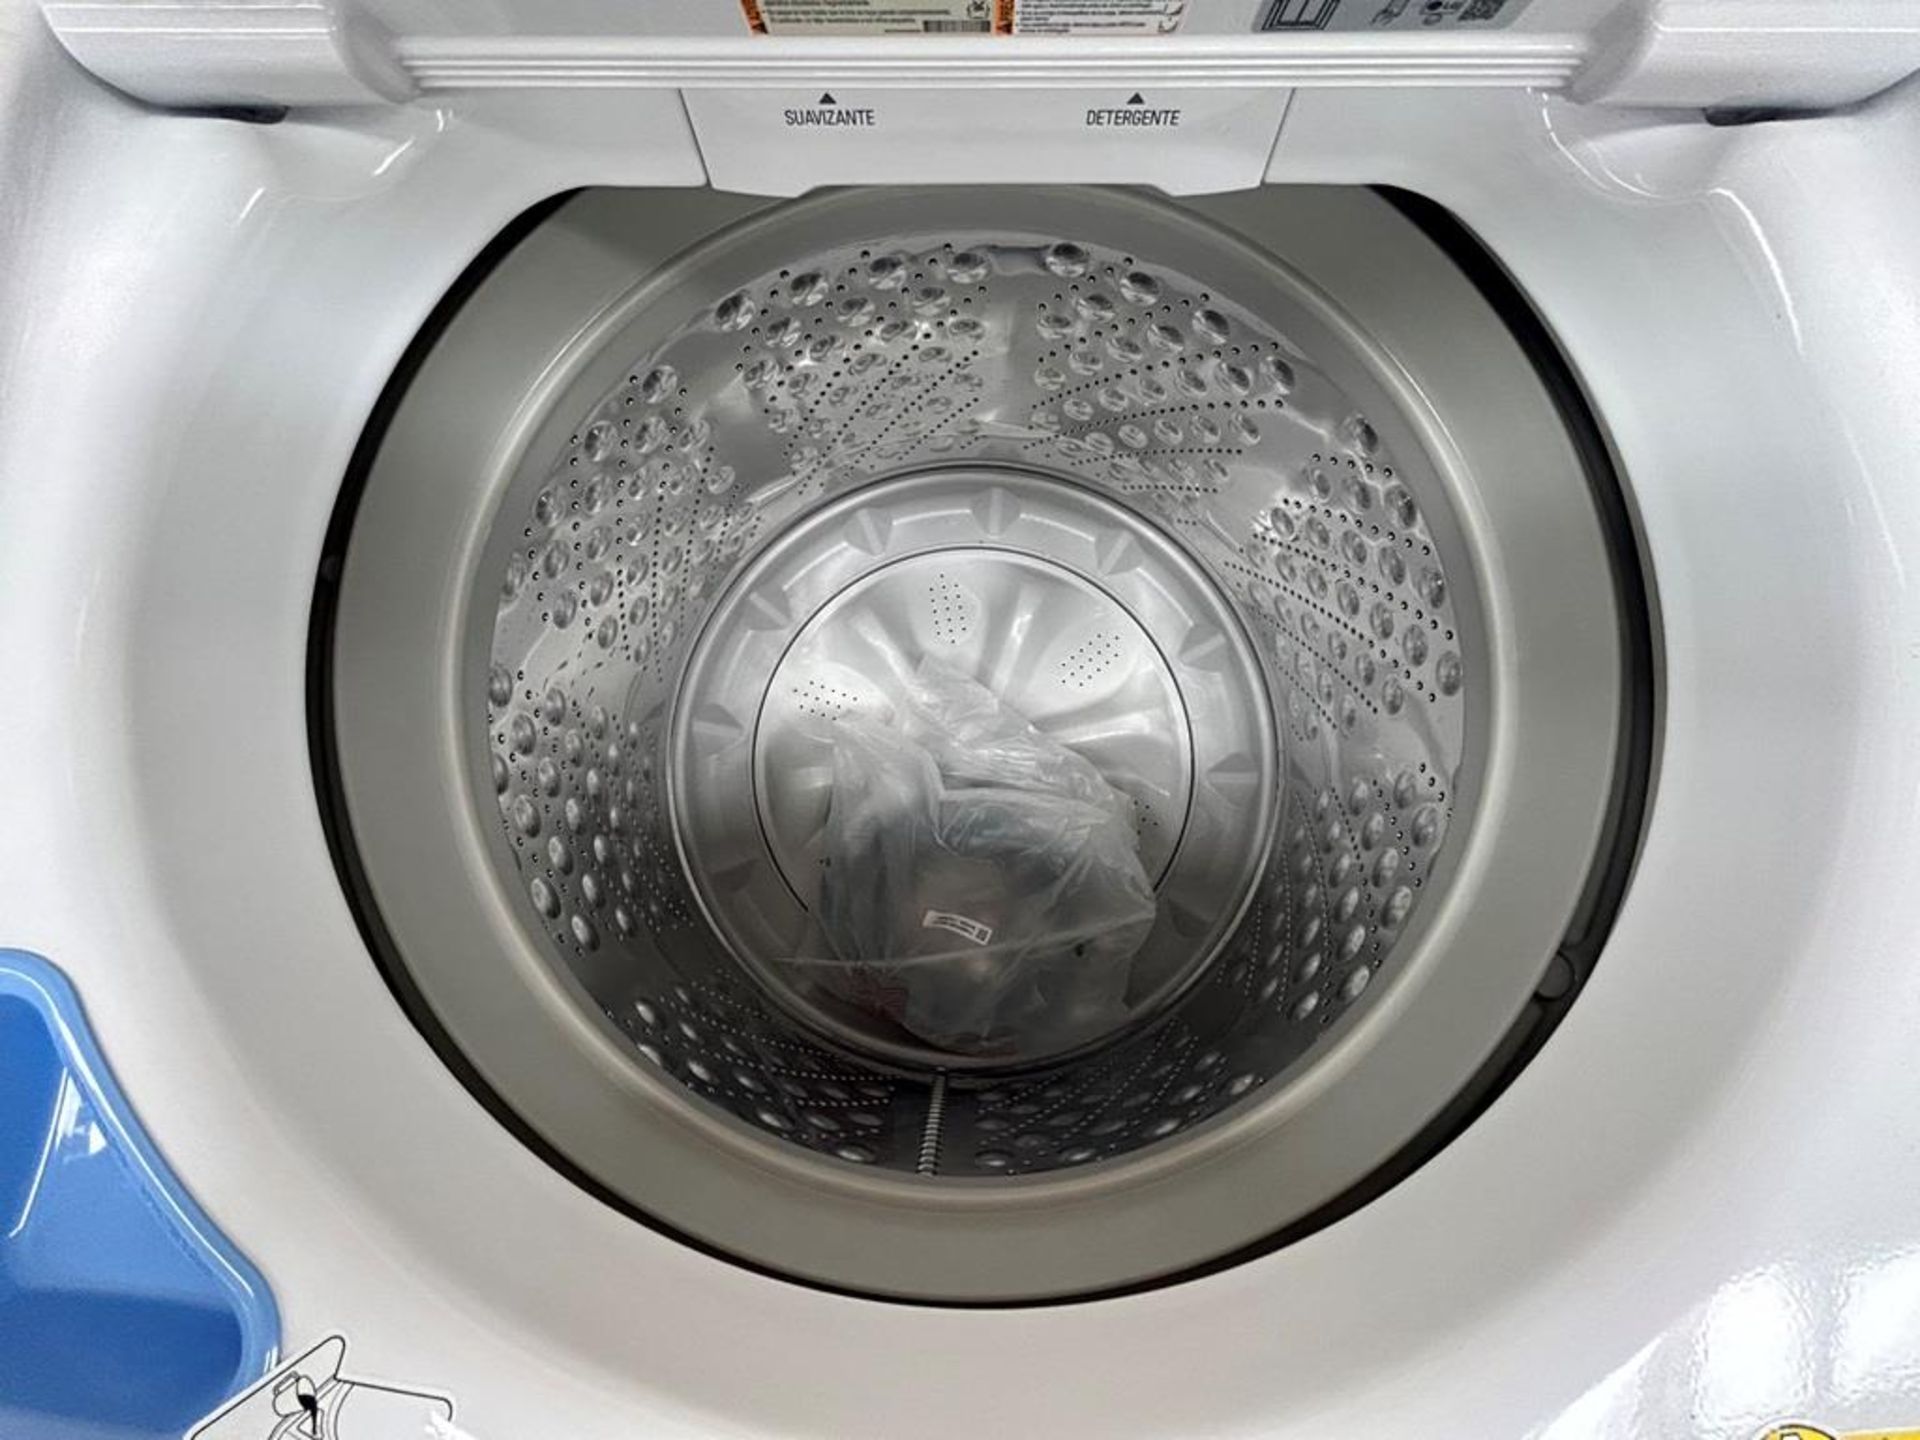 Lote de 2 lavadoras contiene: 1 Lavadora de 22 KG Marca LG, Modelo WT22WT6HK, Serie 37591, Color BL - Image 5 of 6